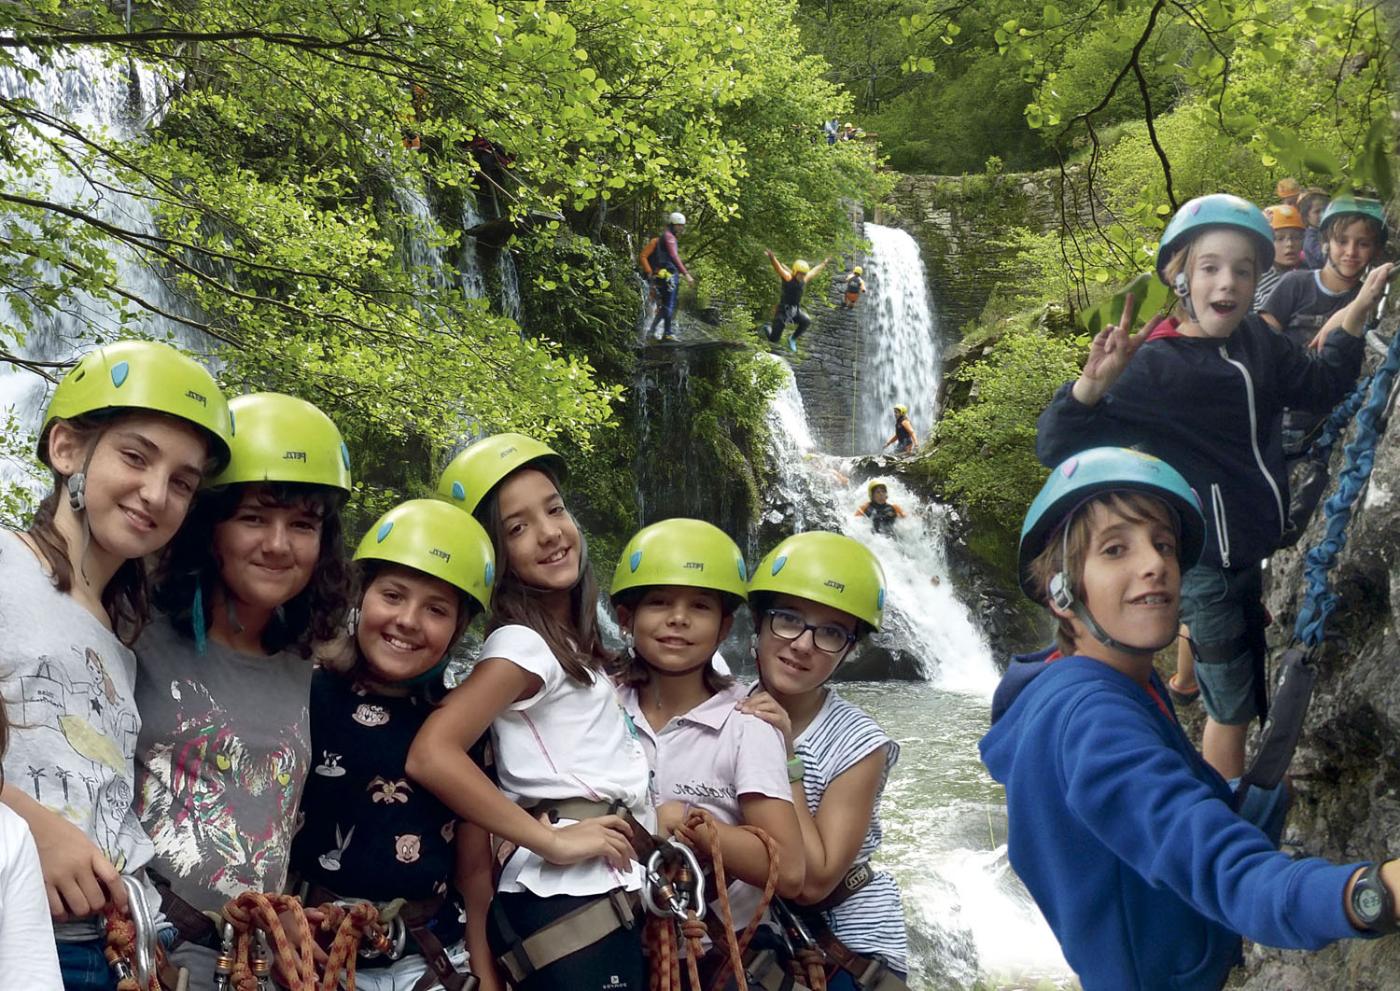 grupo de niños con cascos delante de una cascada